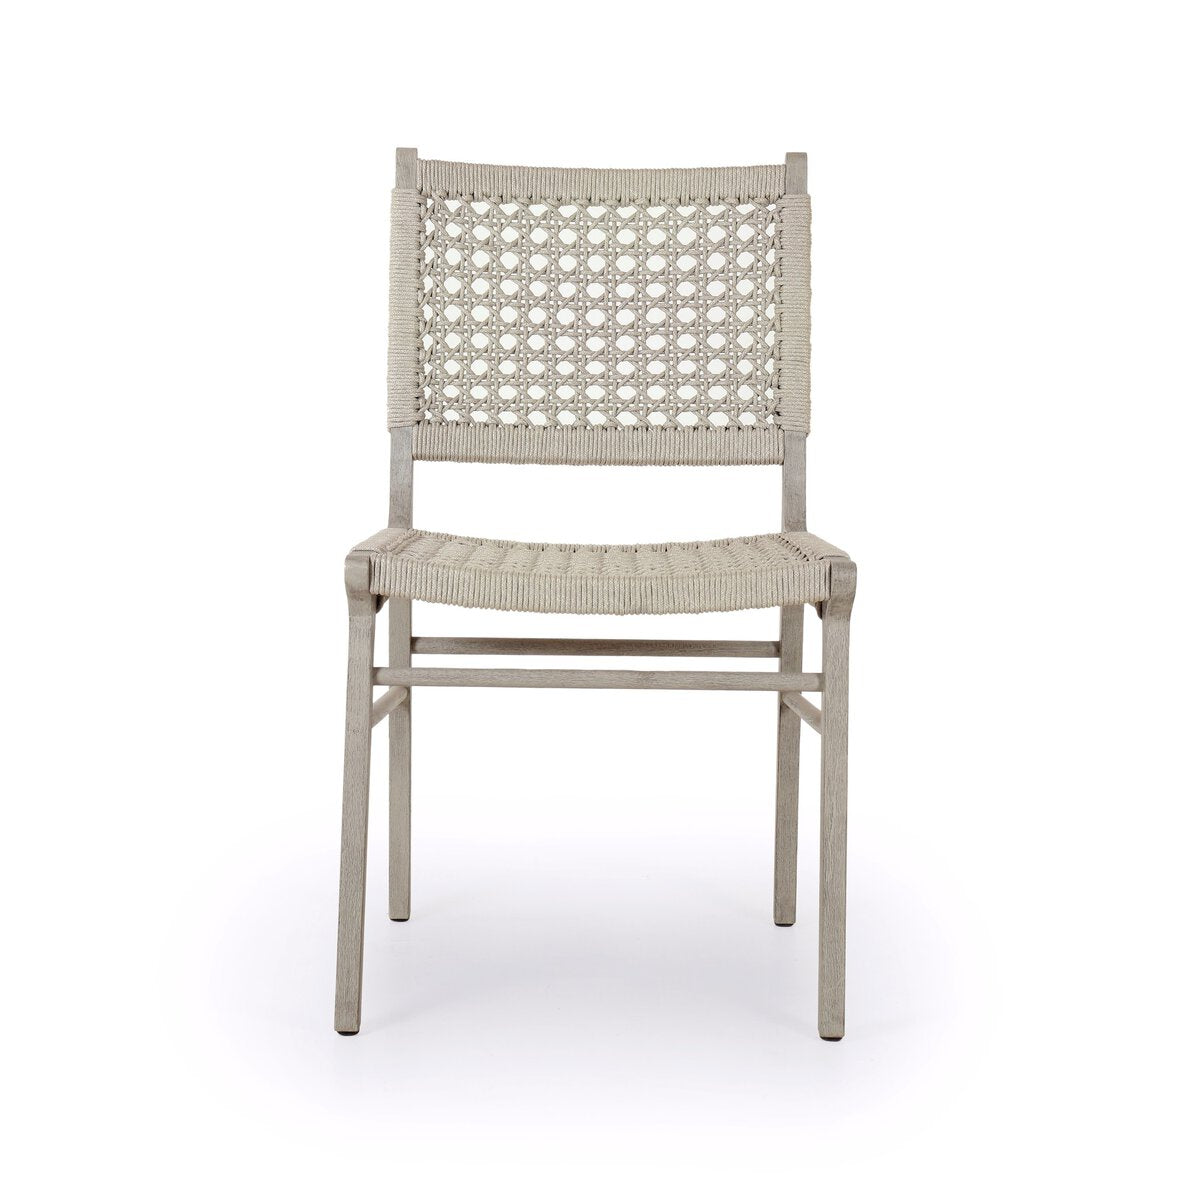 Delmar Outdoor Chair - Grey